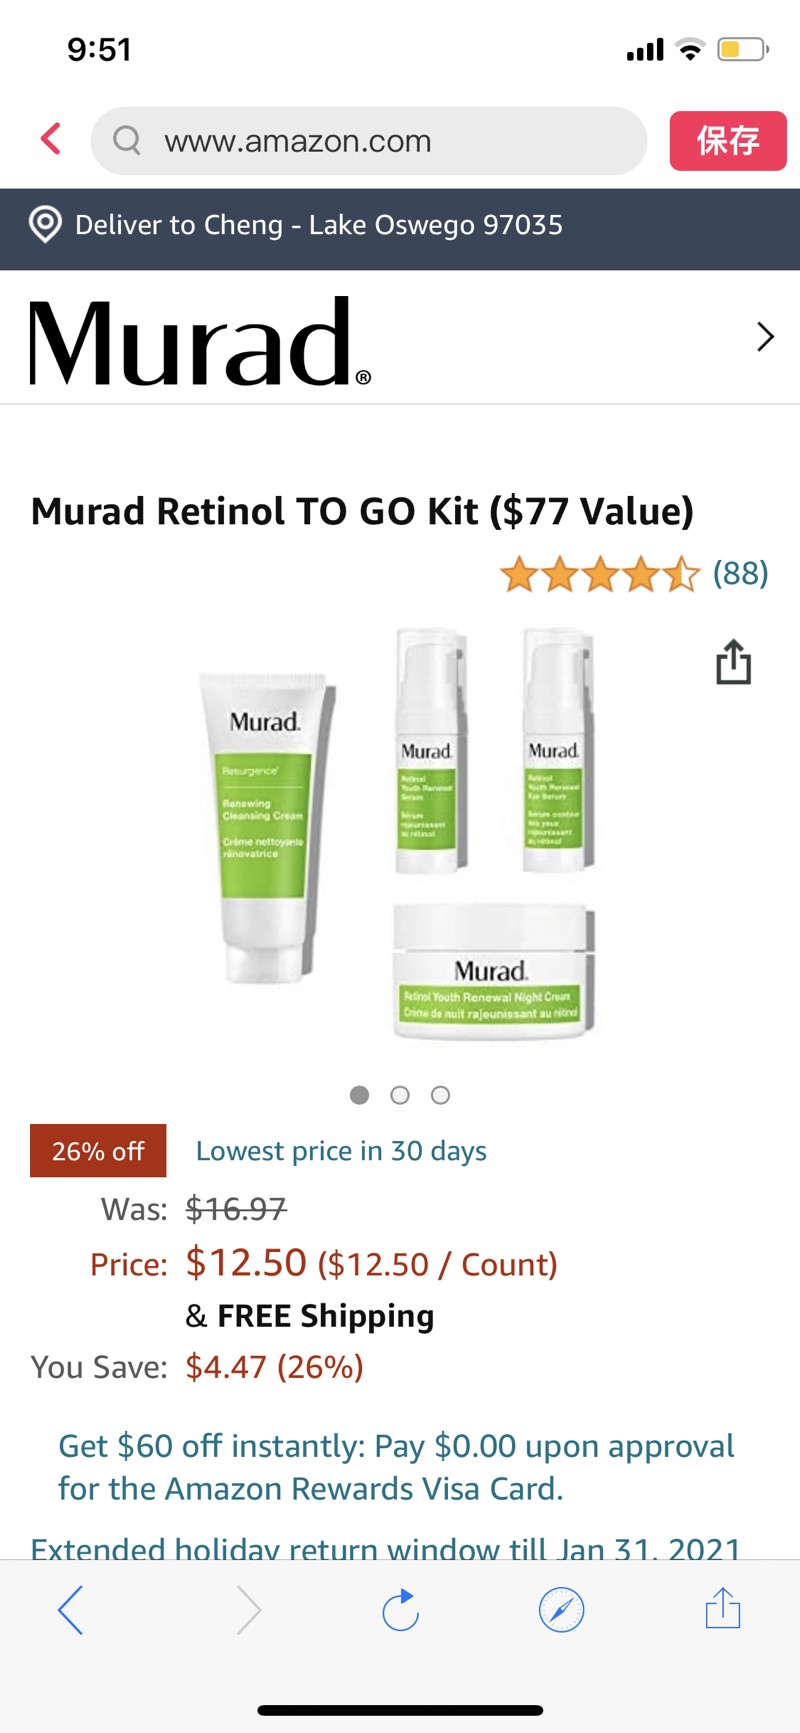 Amazon.com: Murad Retinol TO GO Kit ($77 Value): Premium Beautymurad套装